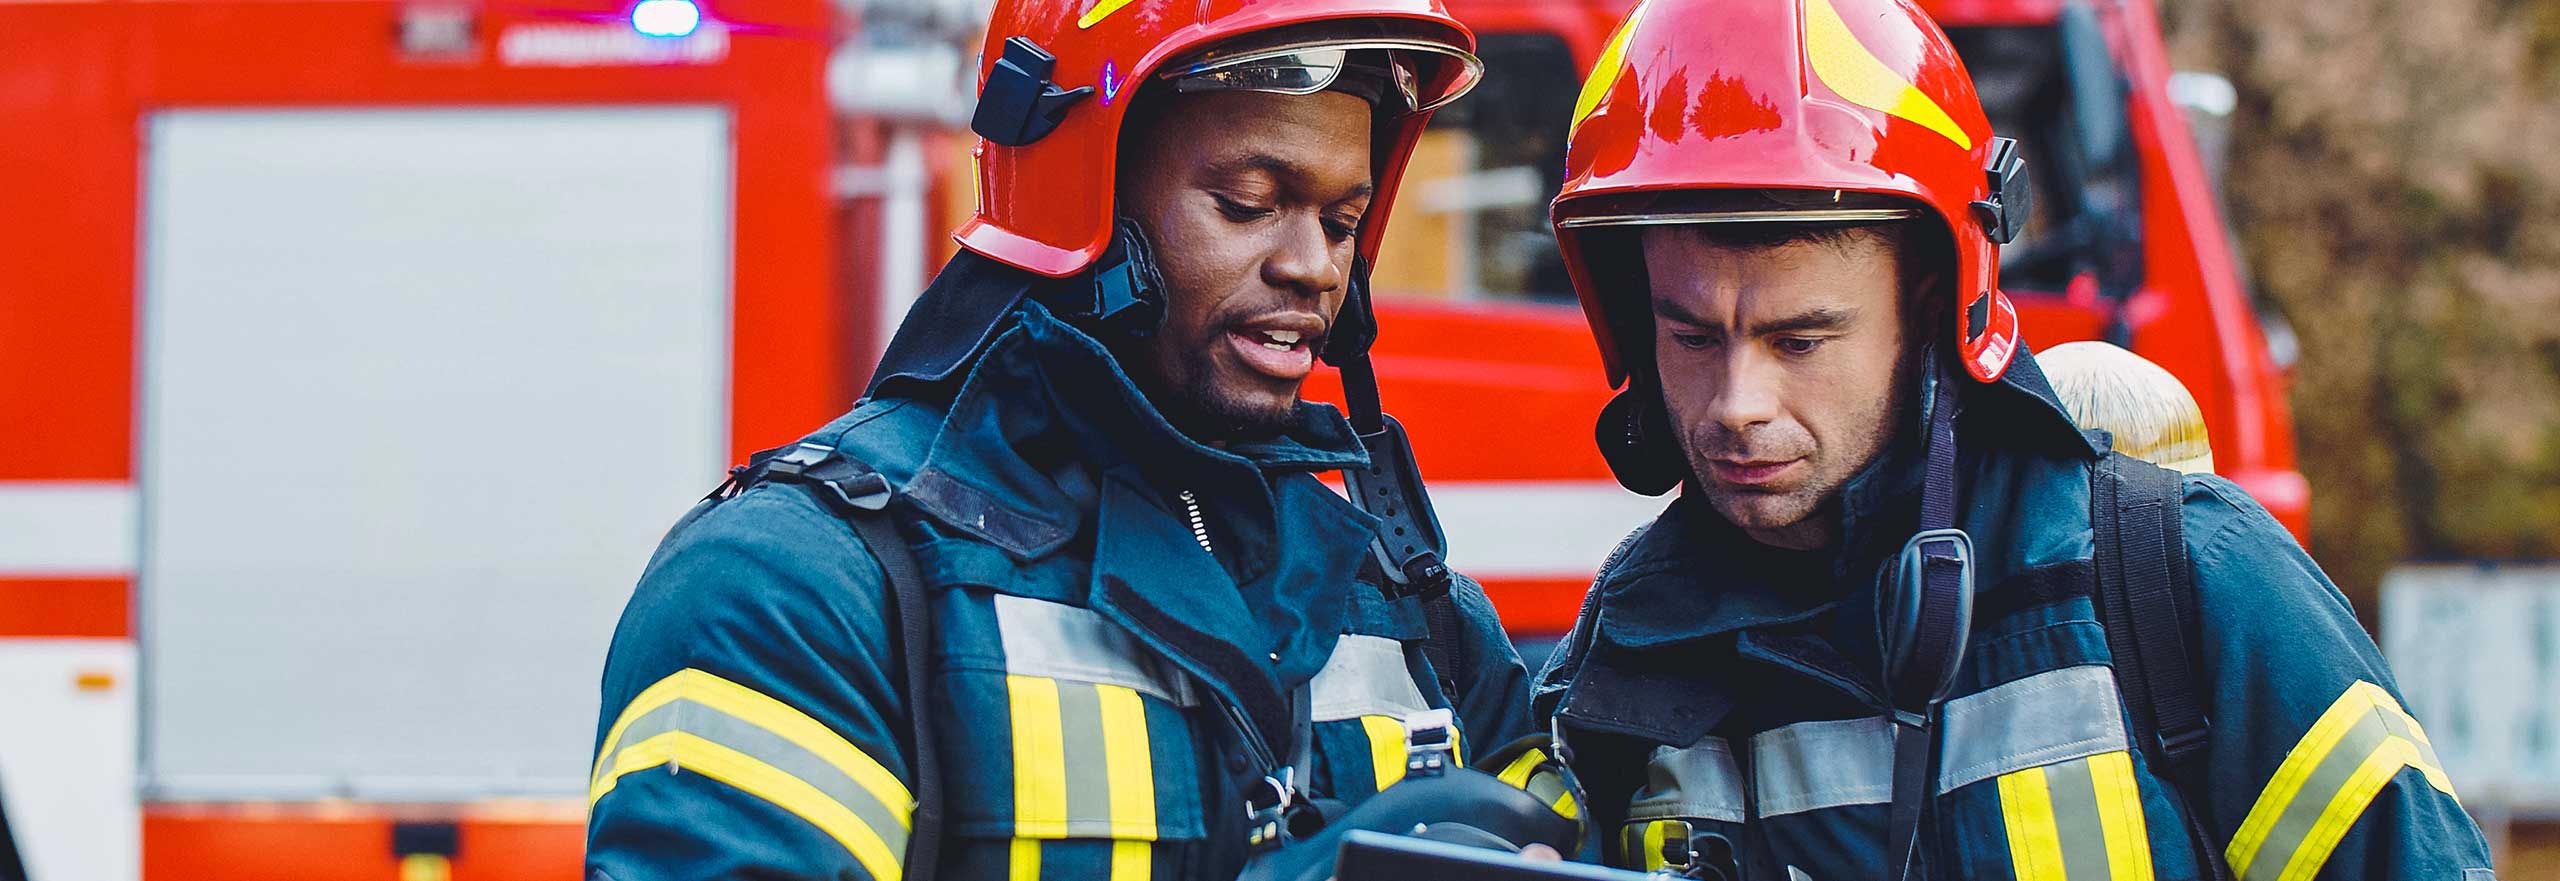 消火活動中の2人の消防士、消火活動中にタブレットコンピューターを使用している防護衣とヘルメットを着用した消防士の人物写真。